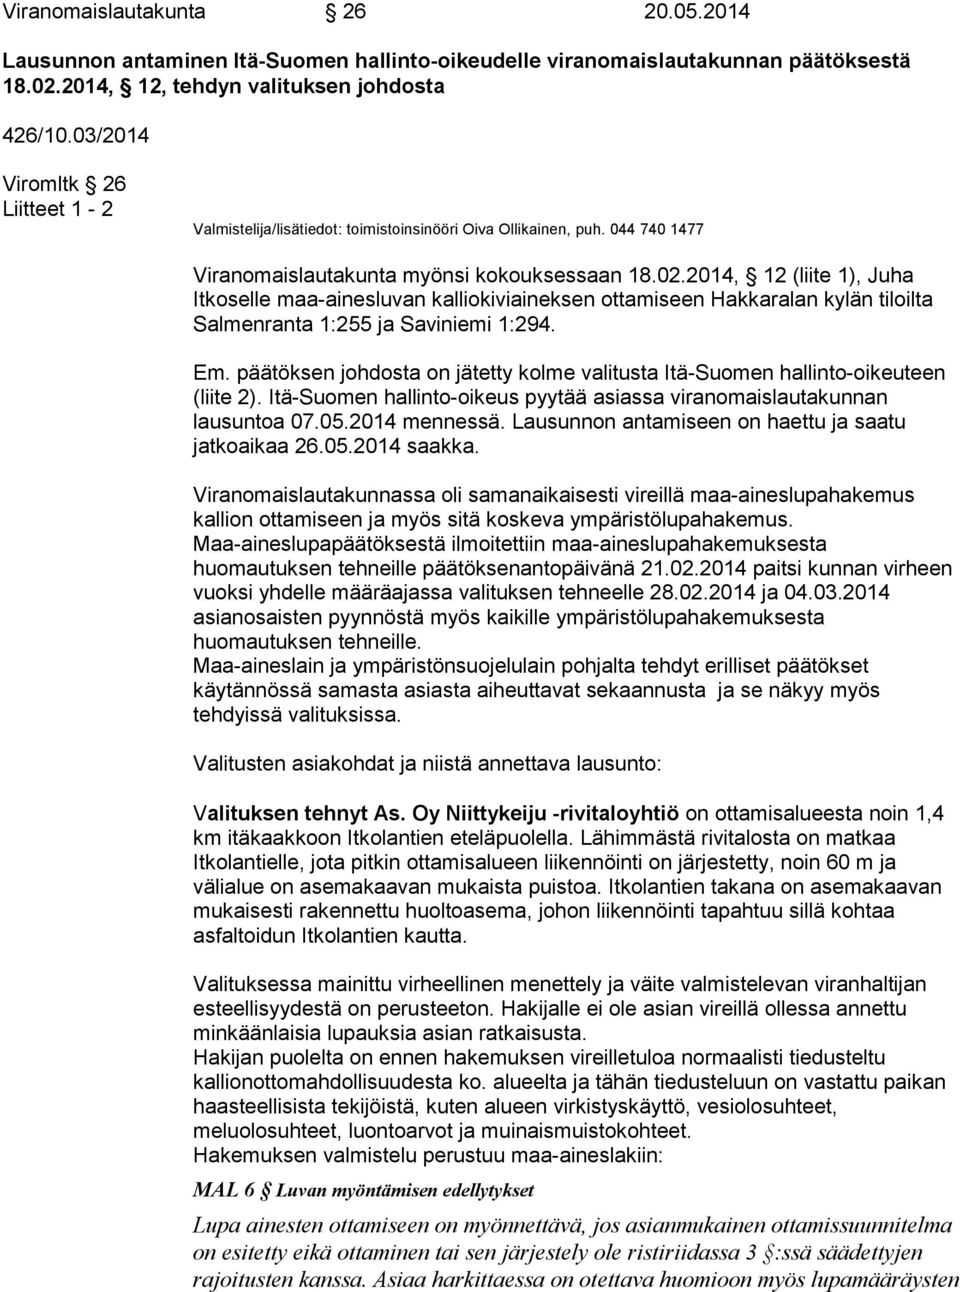 2014, 12 (liite 1), Juha Itkoselle maa-ainesluvan kalliokiviaineksen ottamiseen Hakkaralan kylän tiloilta Salmenranta 1:255 ja Saviniemi 1:294. Em.